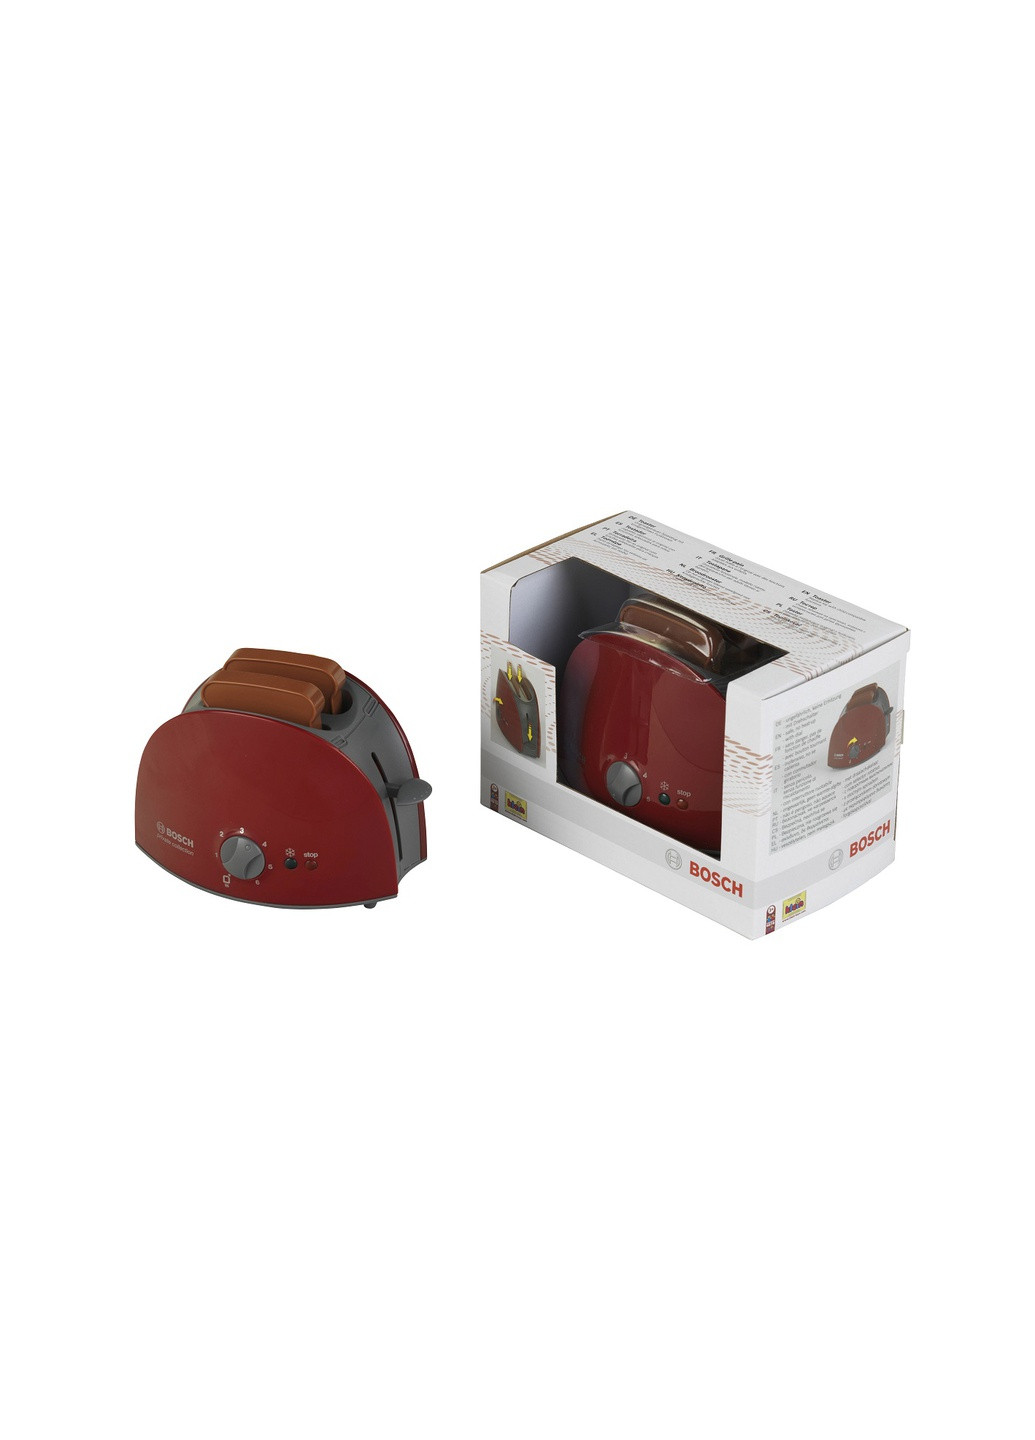 Игрушечный тостер Klein с хлебом в комплекте 9578 (9053) Bosch (263433650)